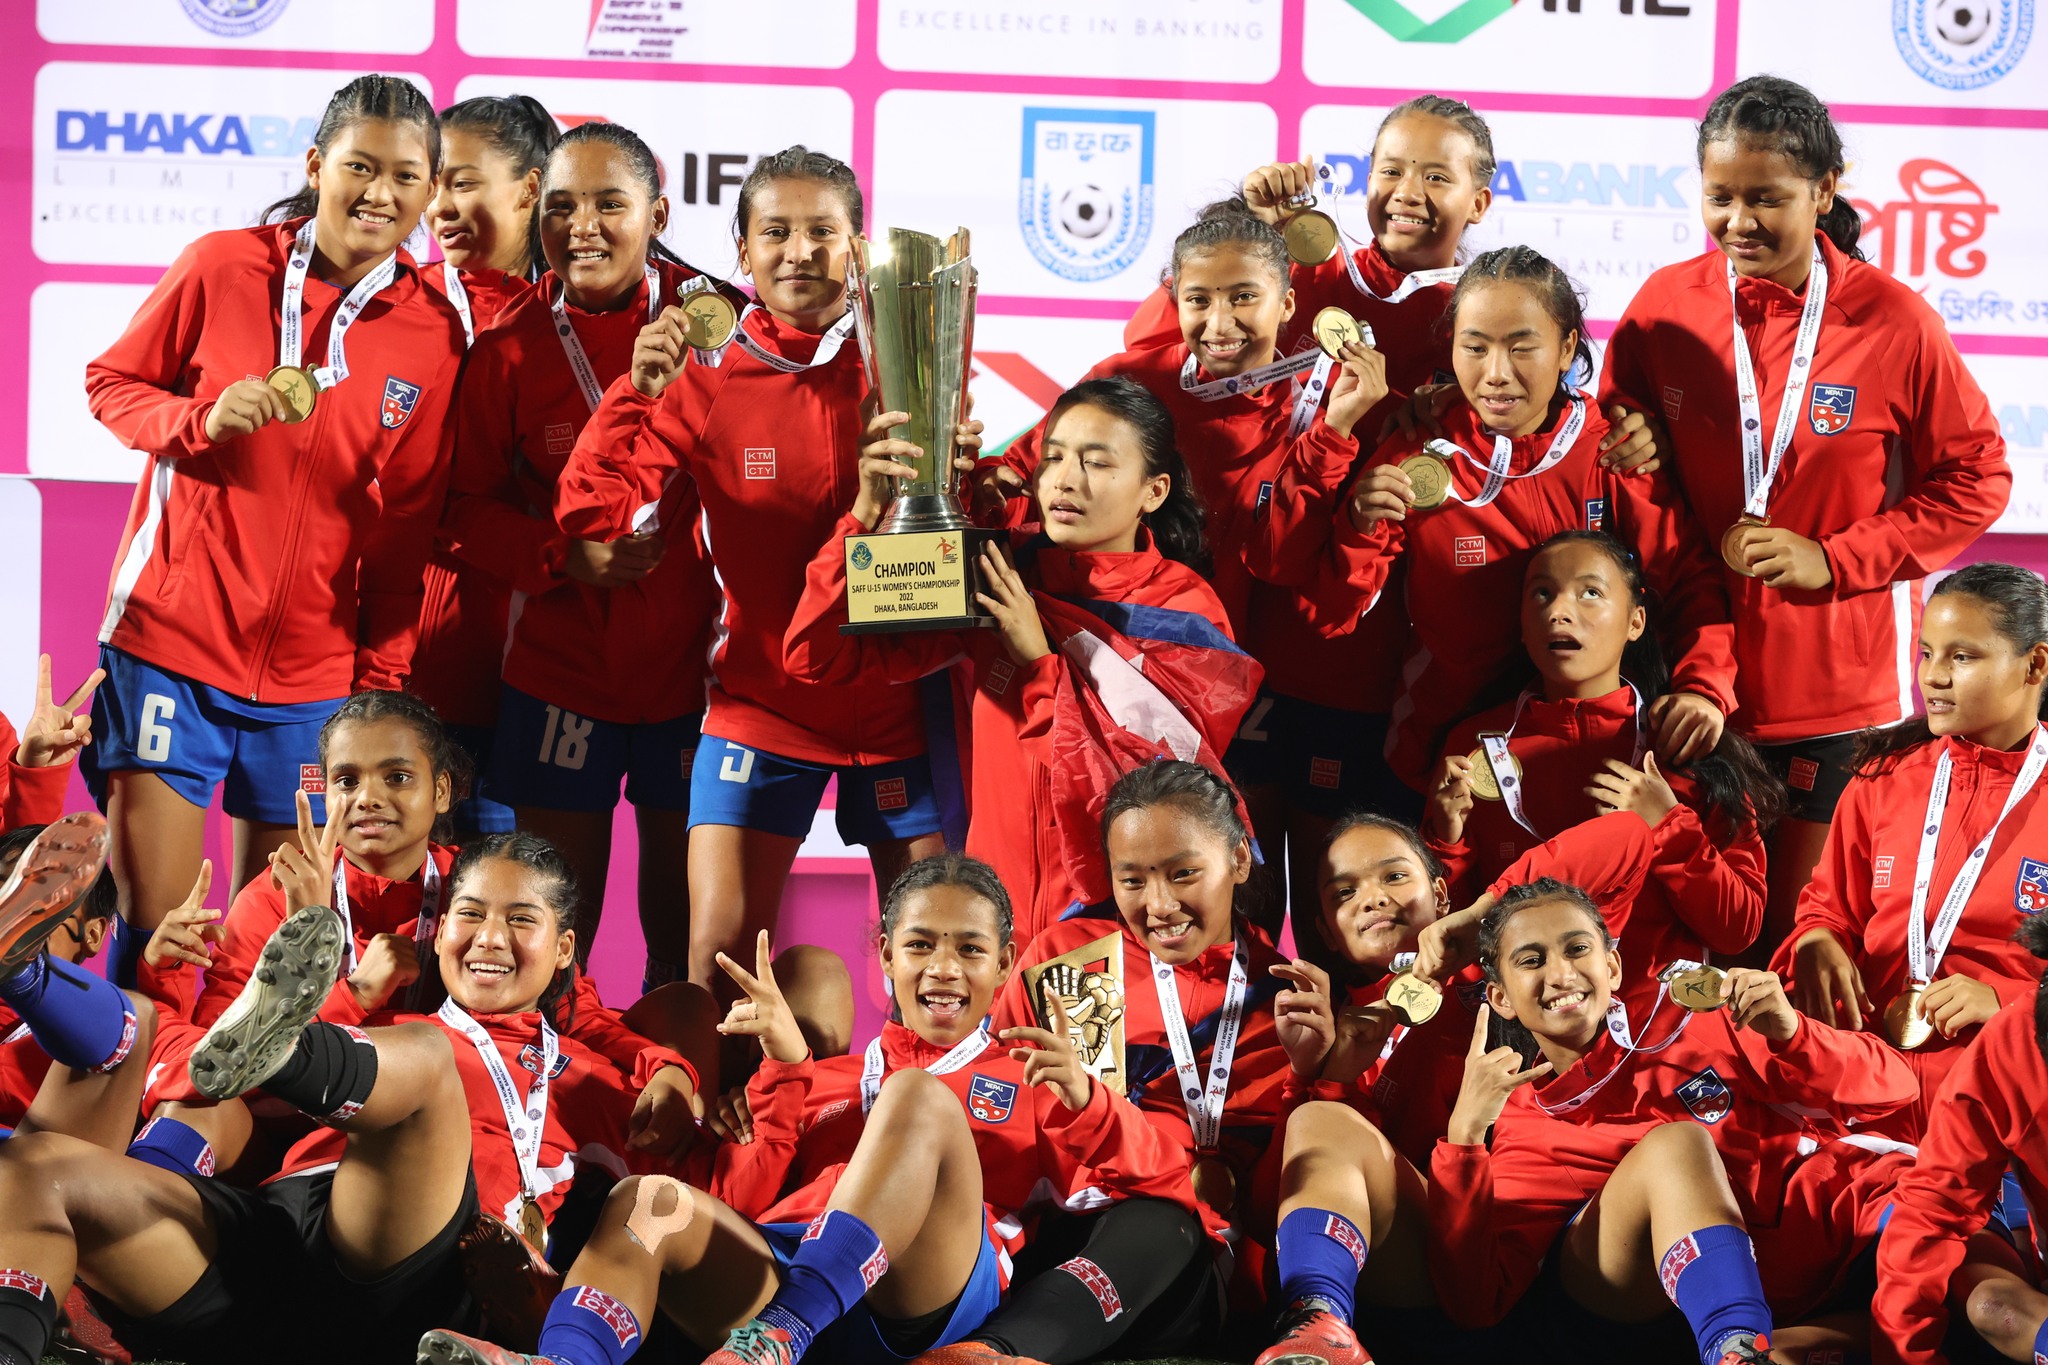 साफ यू-१५ महिला फुटबल च्याम्पियनसिपको उपाधी नेपाललाई (फोटो फिचर)